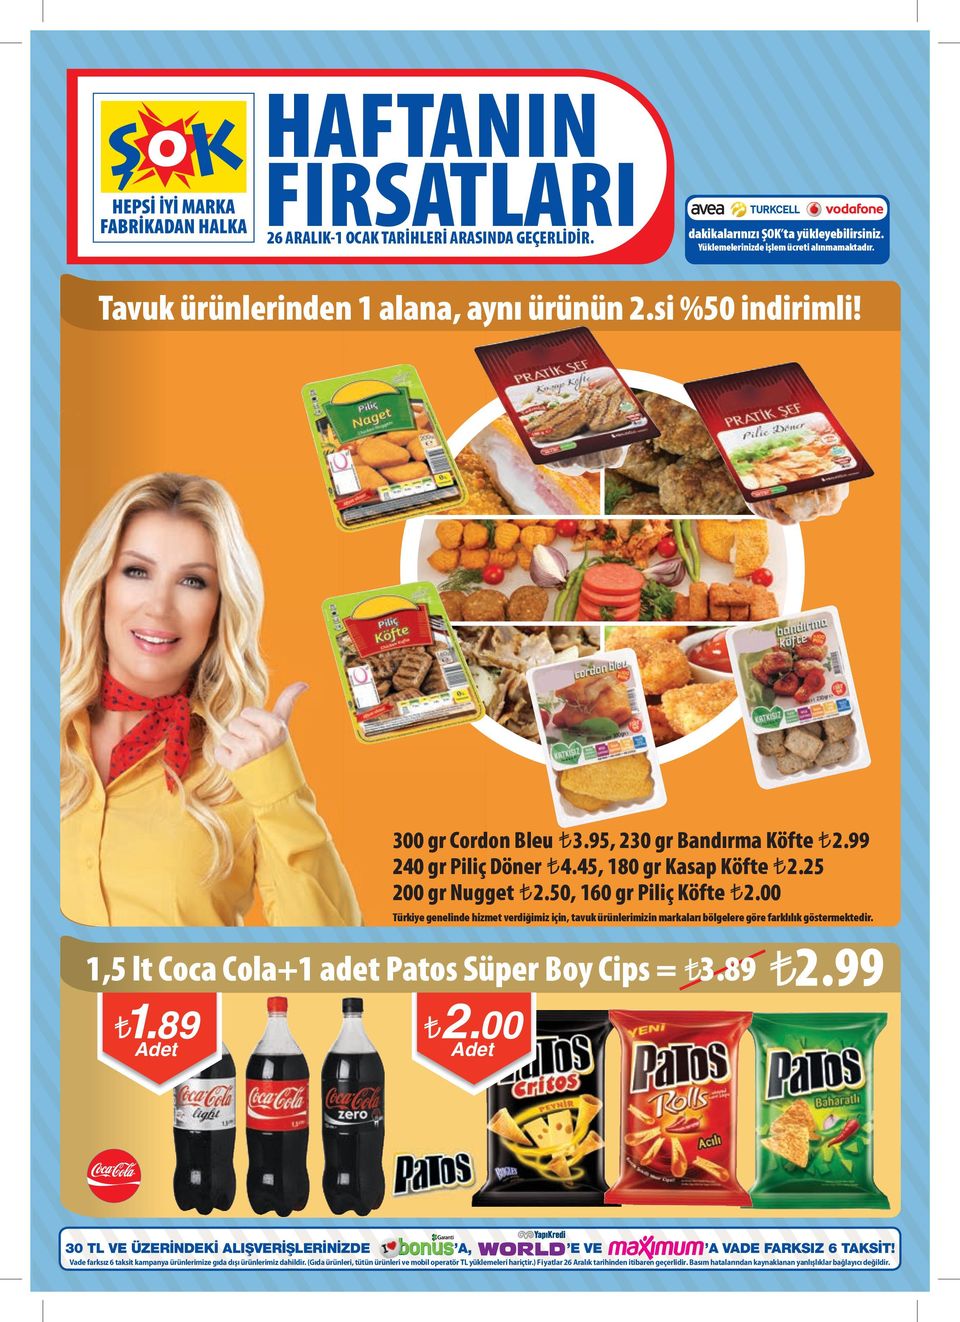 00 Türkiye genelinde hizmet verdiğimiz için, tavuk ürünlerimizin markaları bölgelere göre farklılık göstermektedir. 1,5 lt Coca Cola+1 adet Patos Süper Boy Cips = 3.89 2.